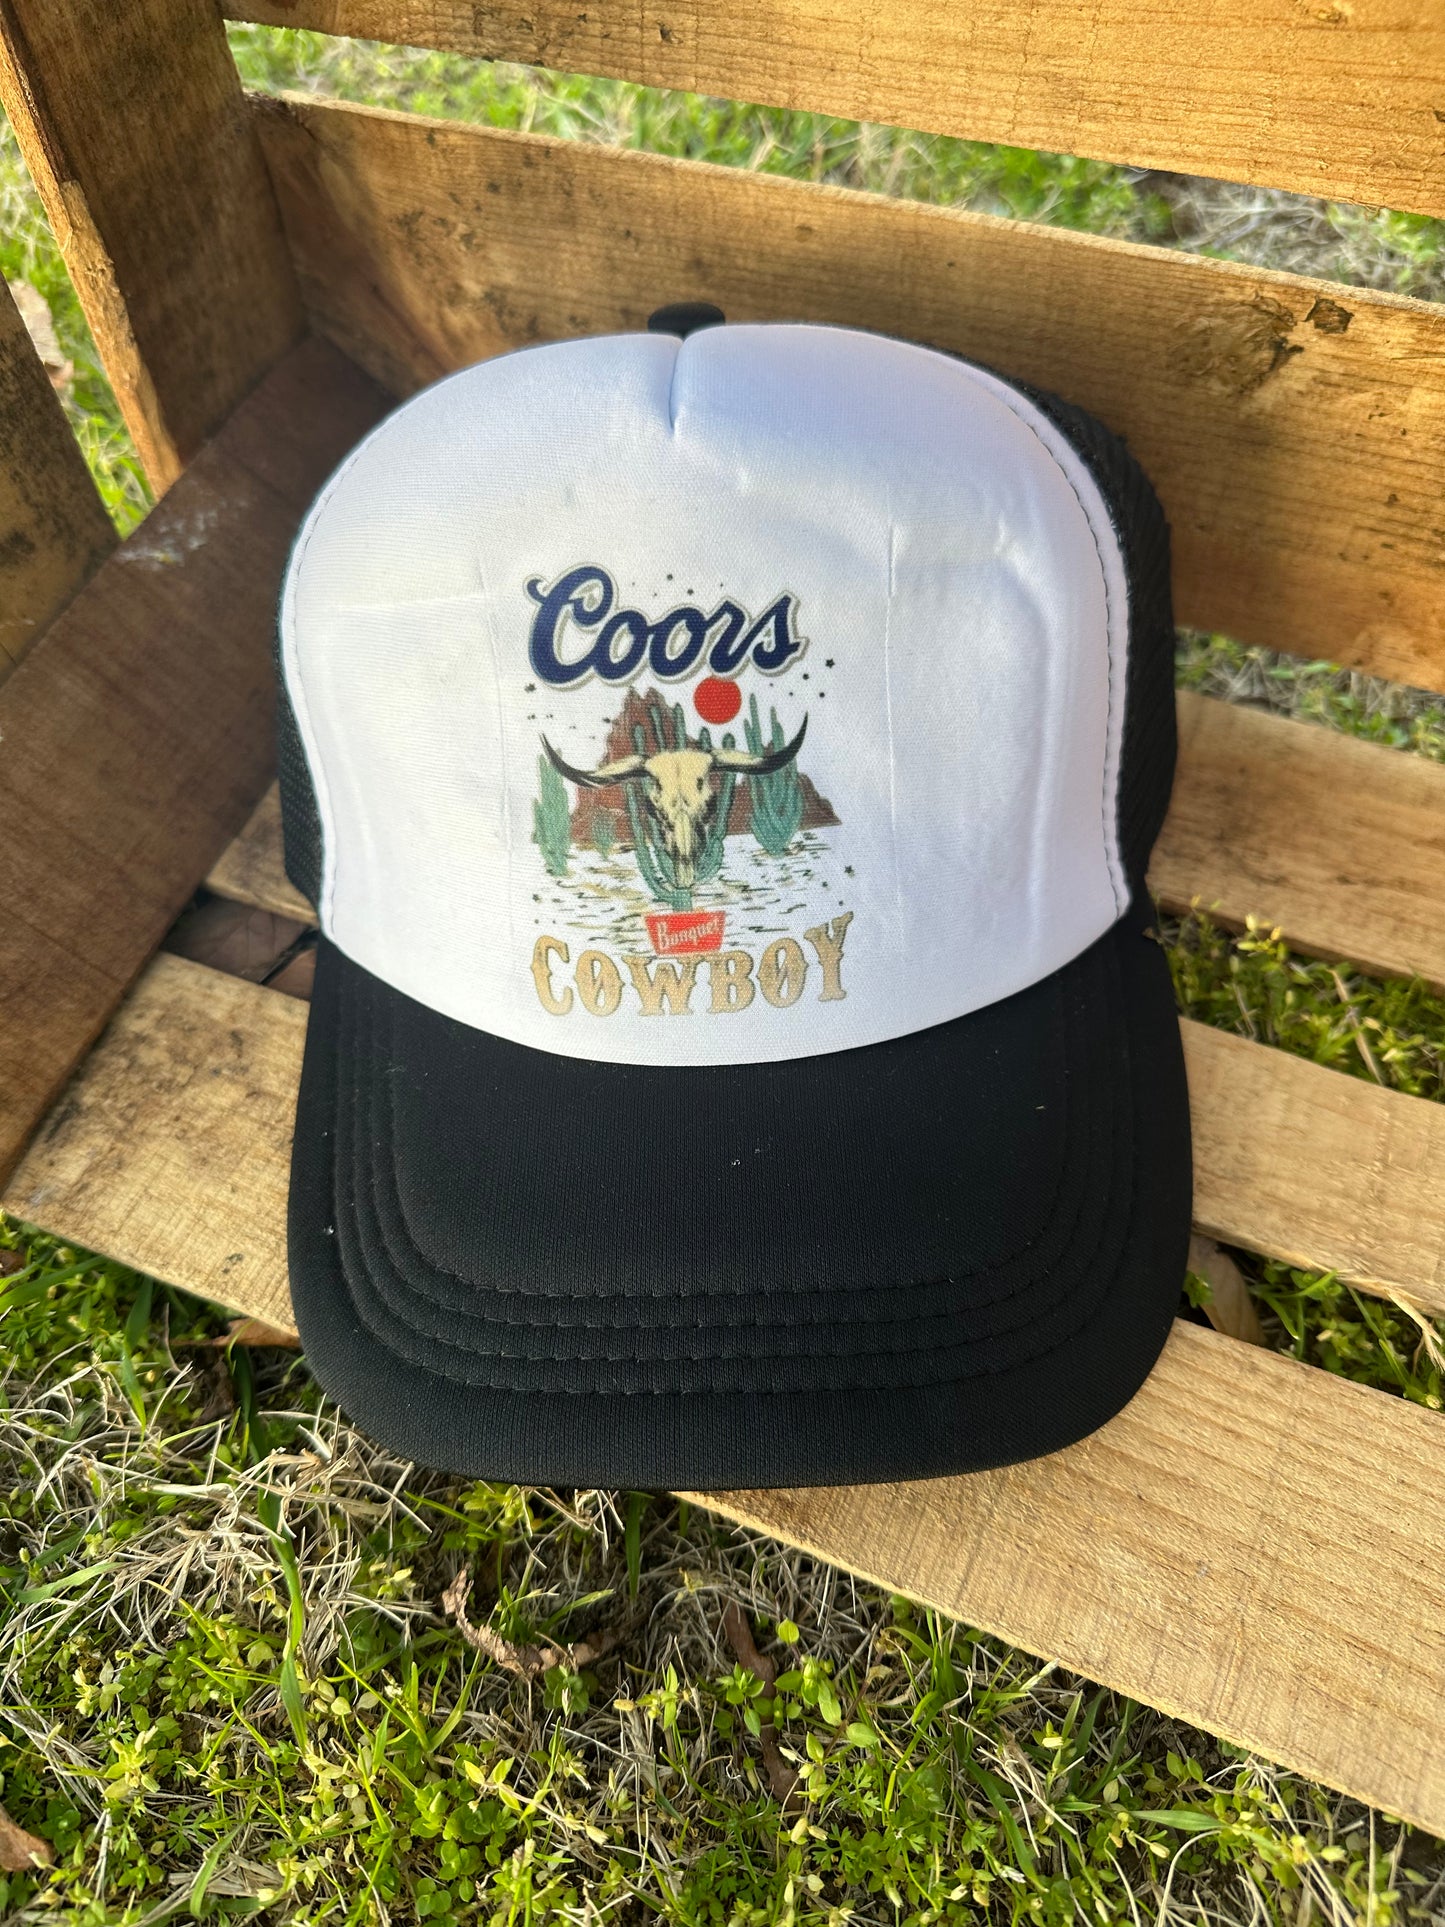 Coors Cowboy Trucker Cap